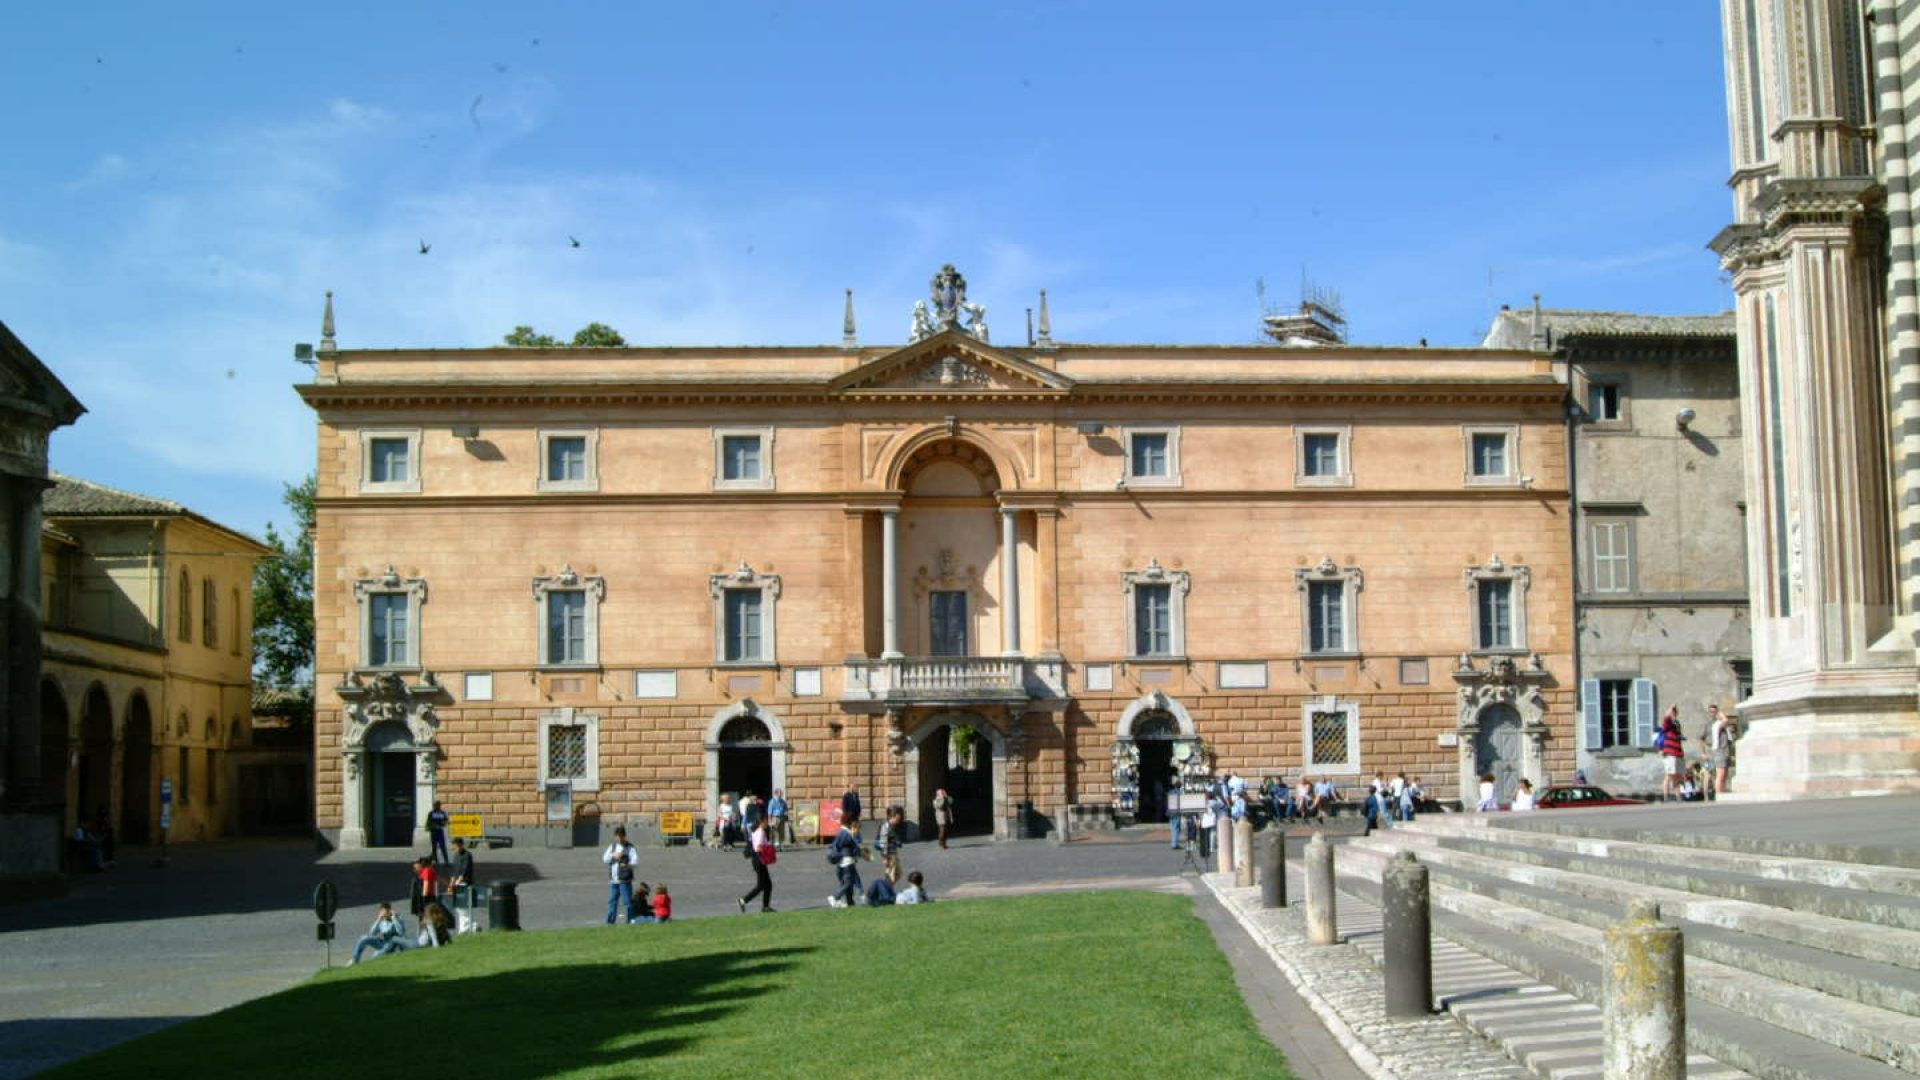 The Opera del Duomo Museum